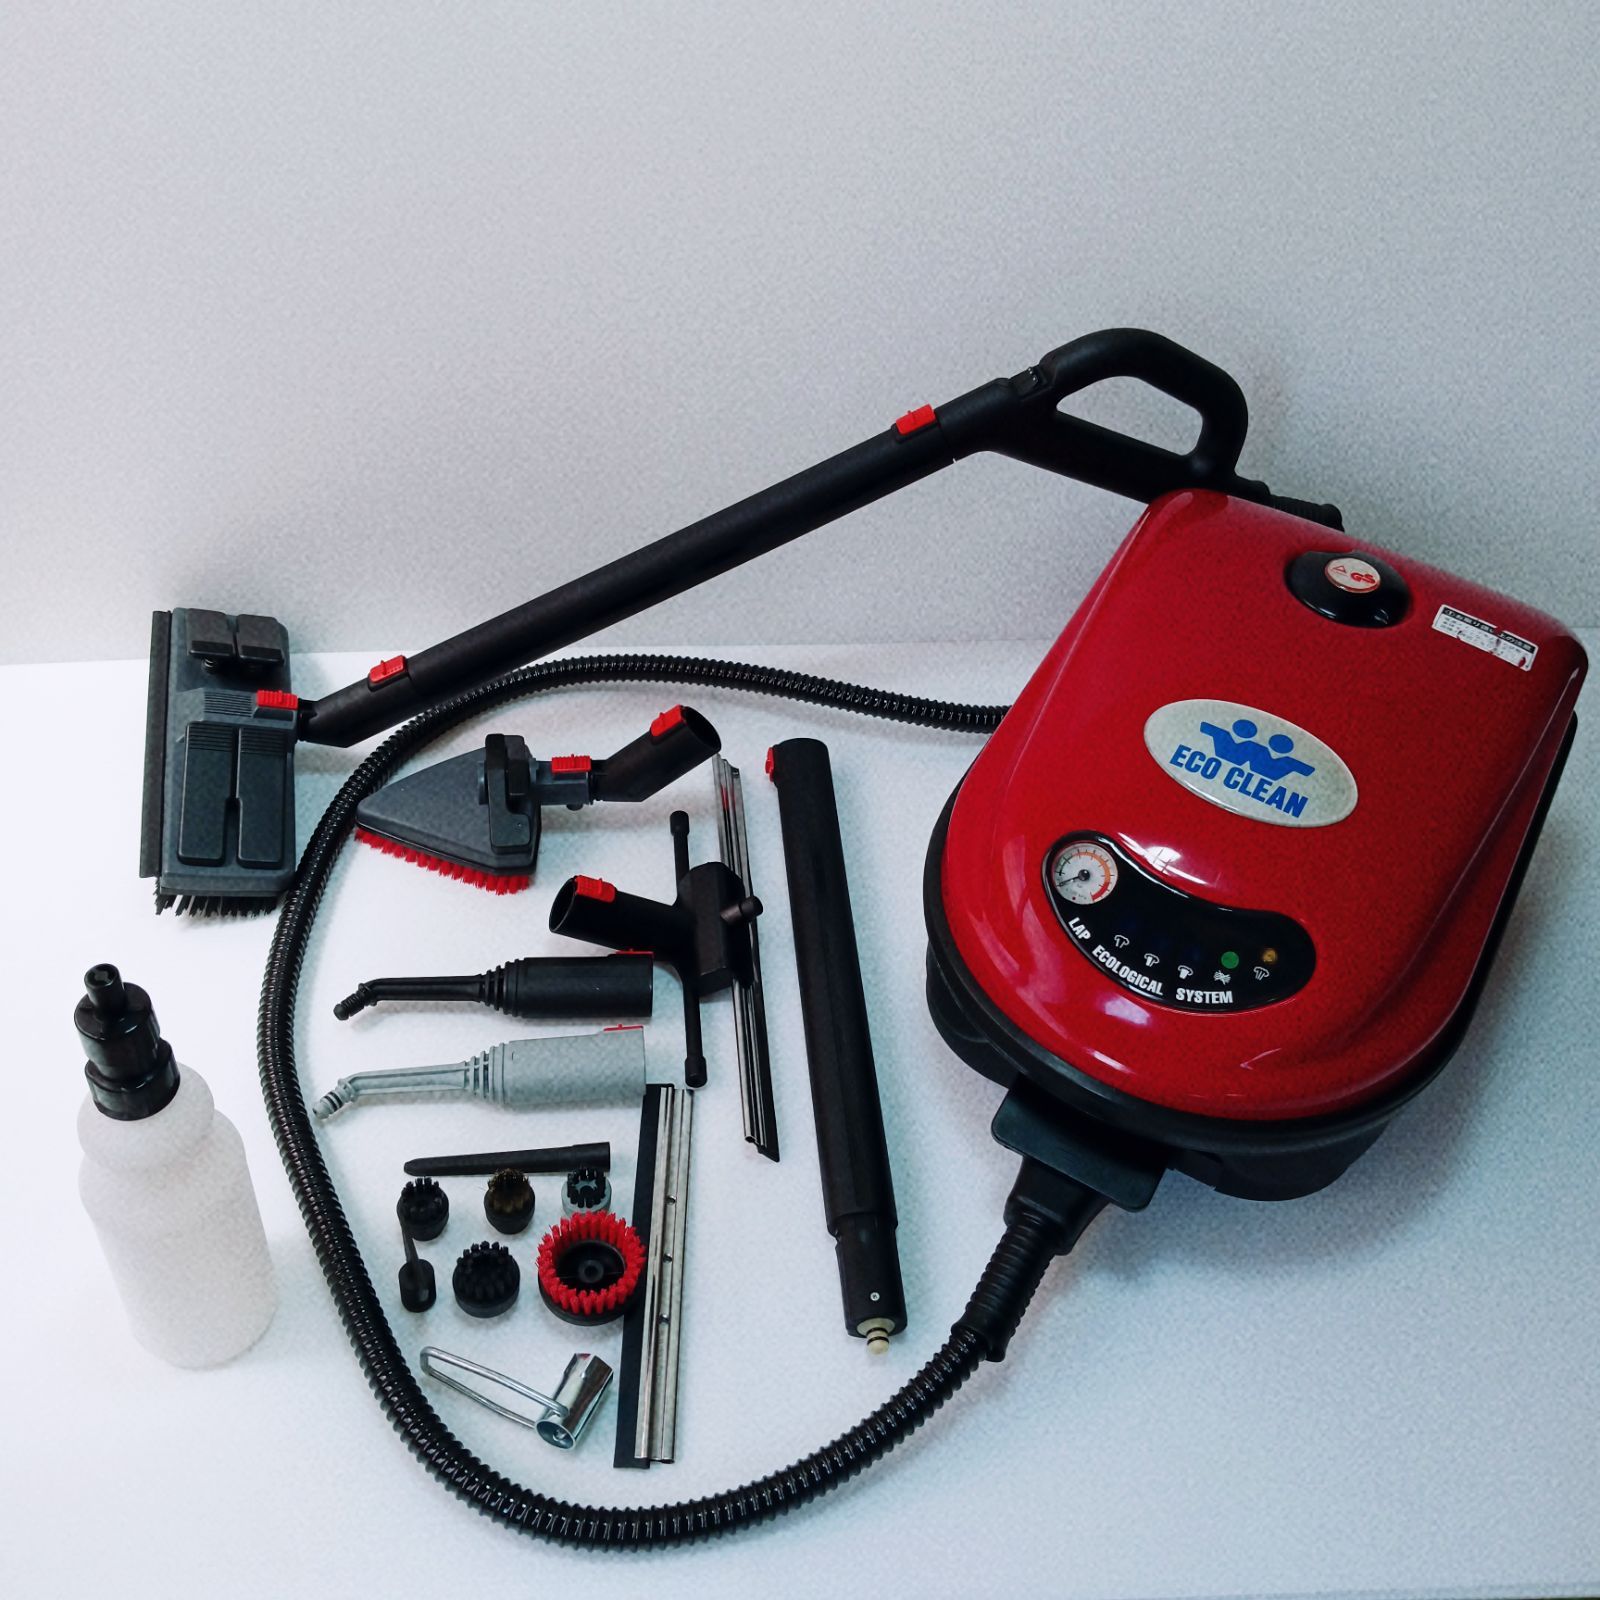 ◇ ラップ社 スチームクリーナー ECO CLEAN 高圧洗浄機 PC2400 - 生活家電